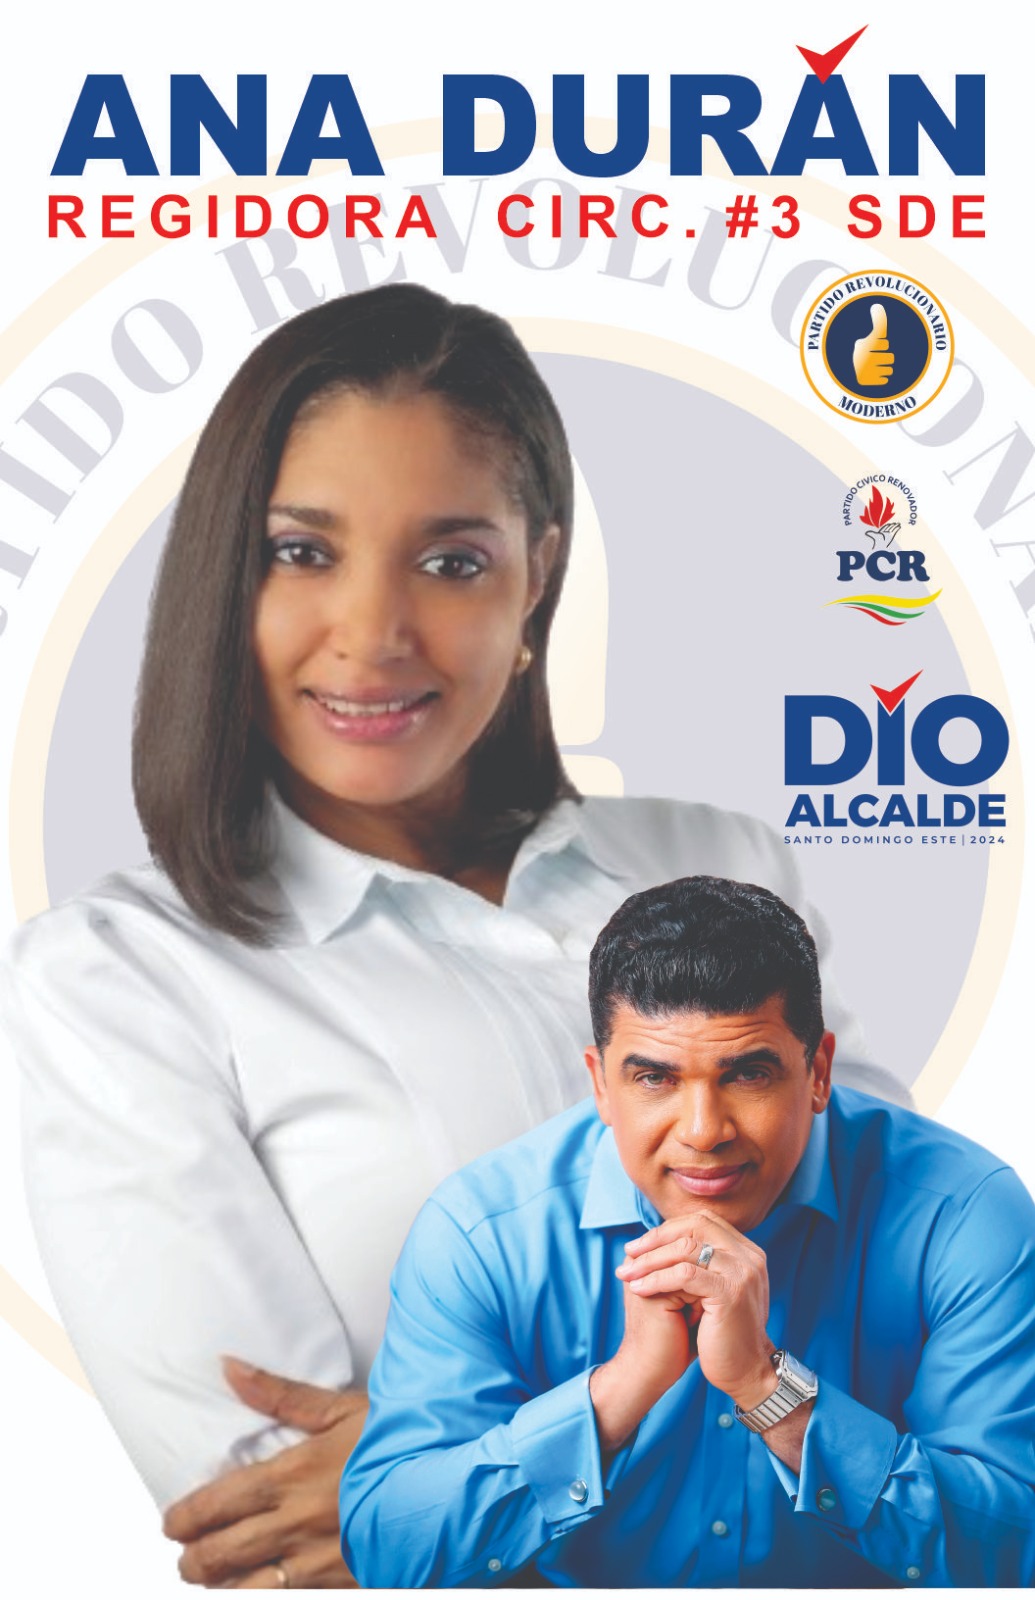 Ana Durán, hija del bachatero Blas Durán, es candidata a regidora en SDE